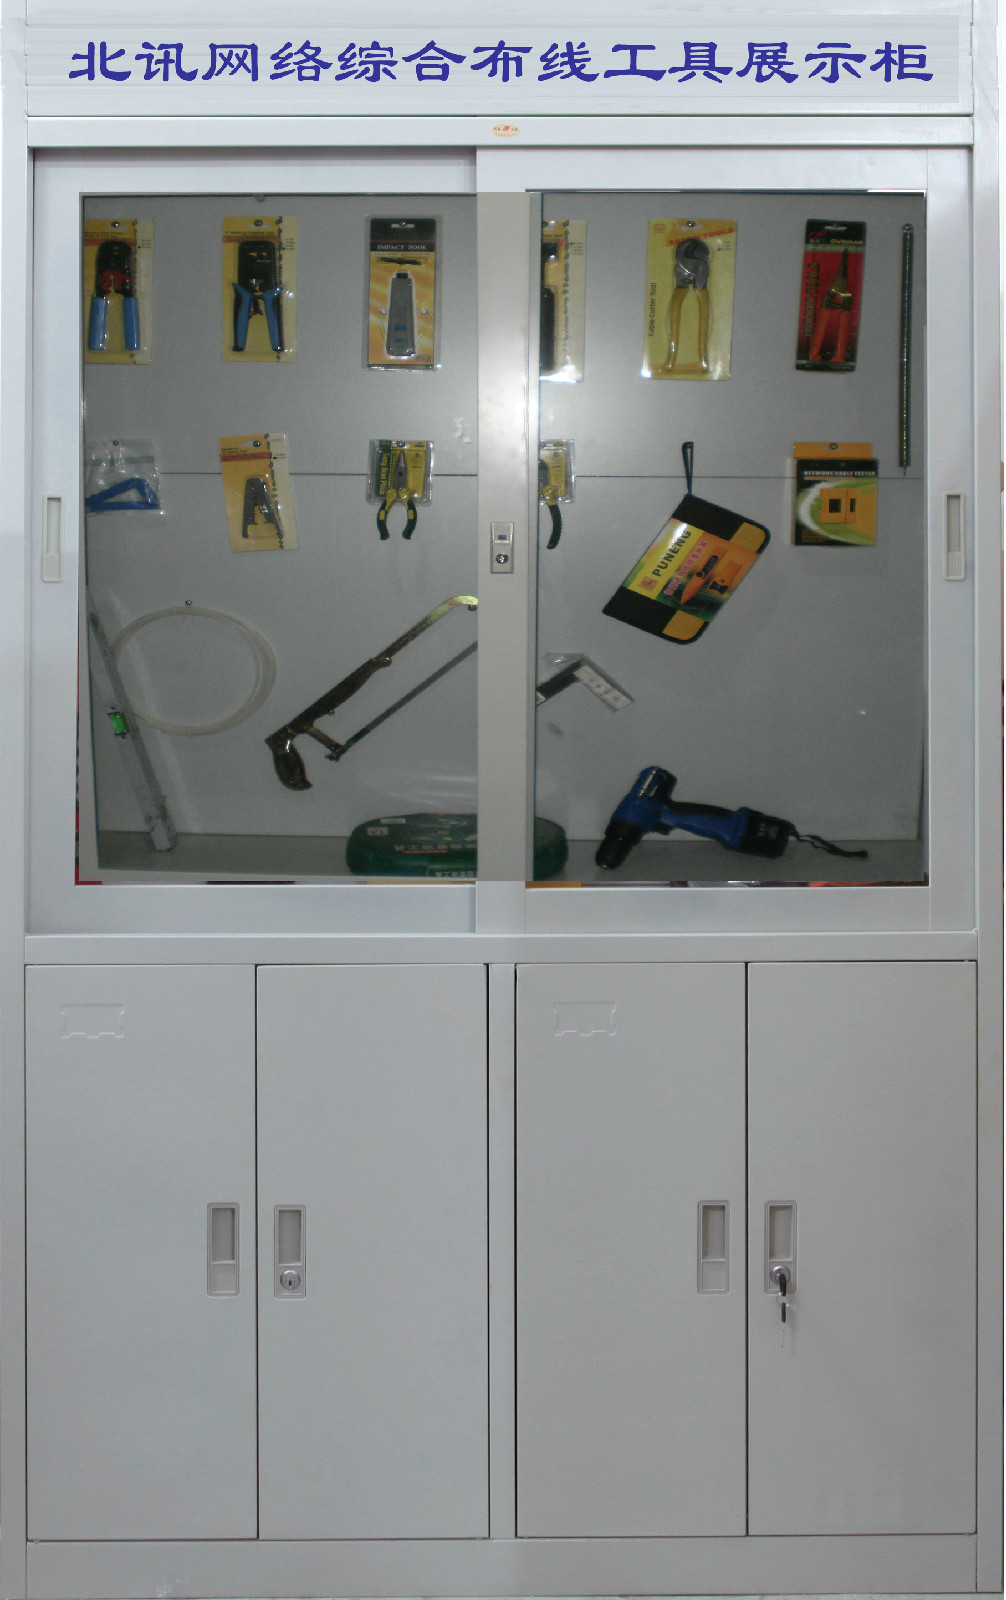 工具展示櫃